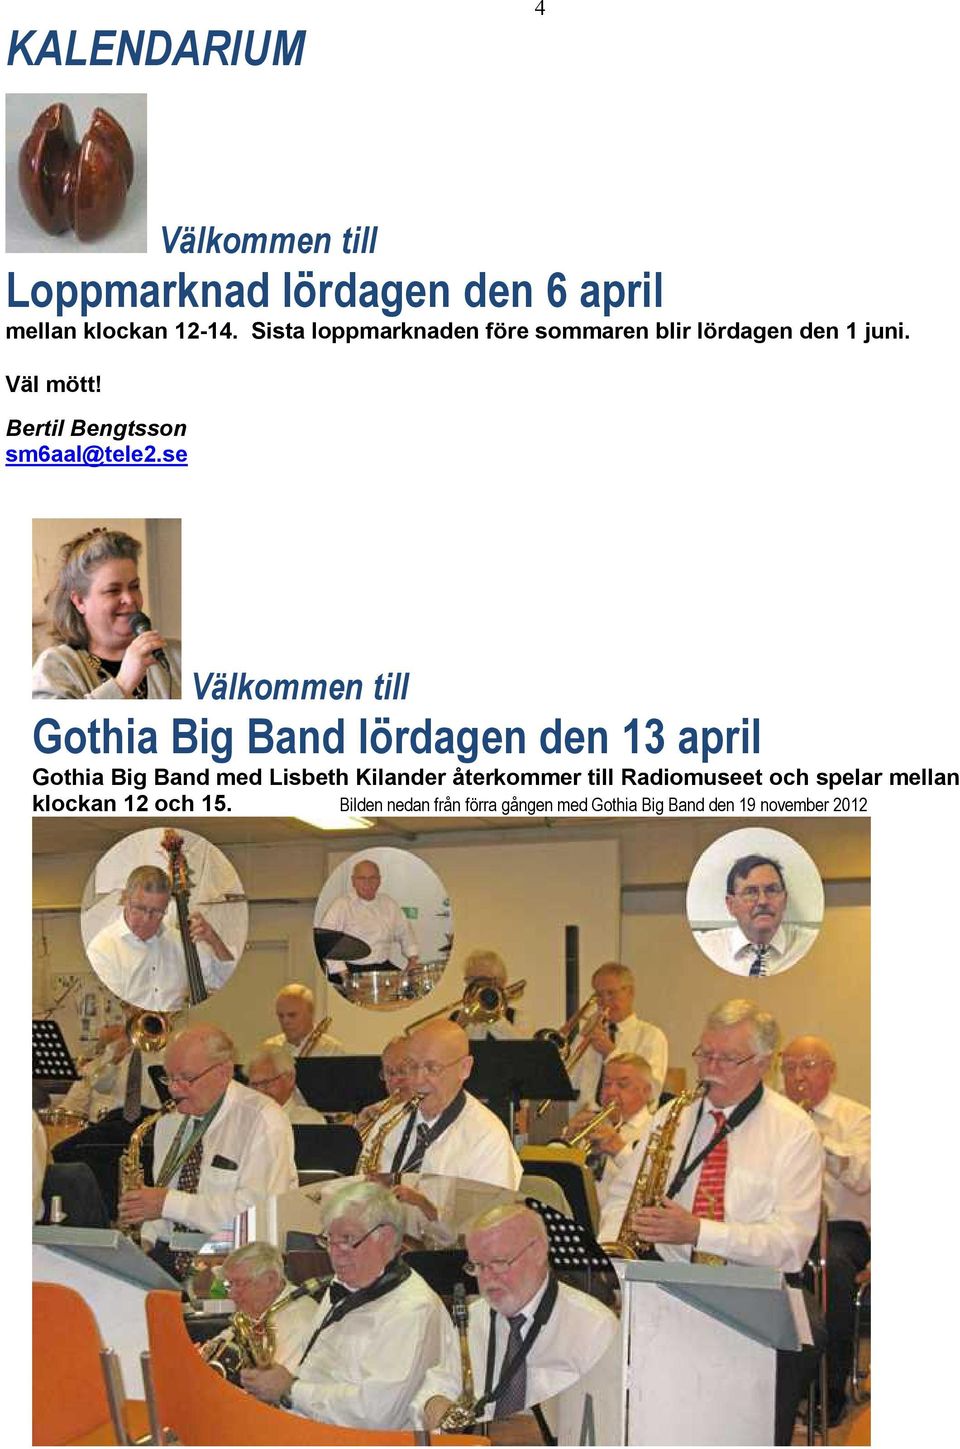 se Välkommen till Gothia Big Band lördagen den 13 april Gothia Big Band med Lisbeth Kilander återkommer